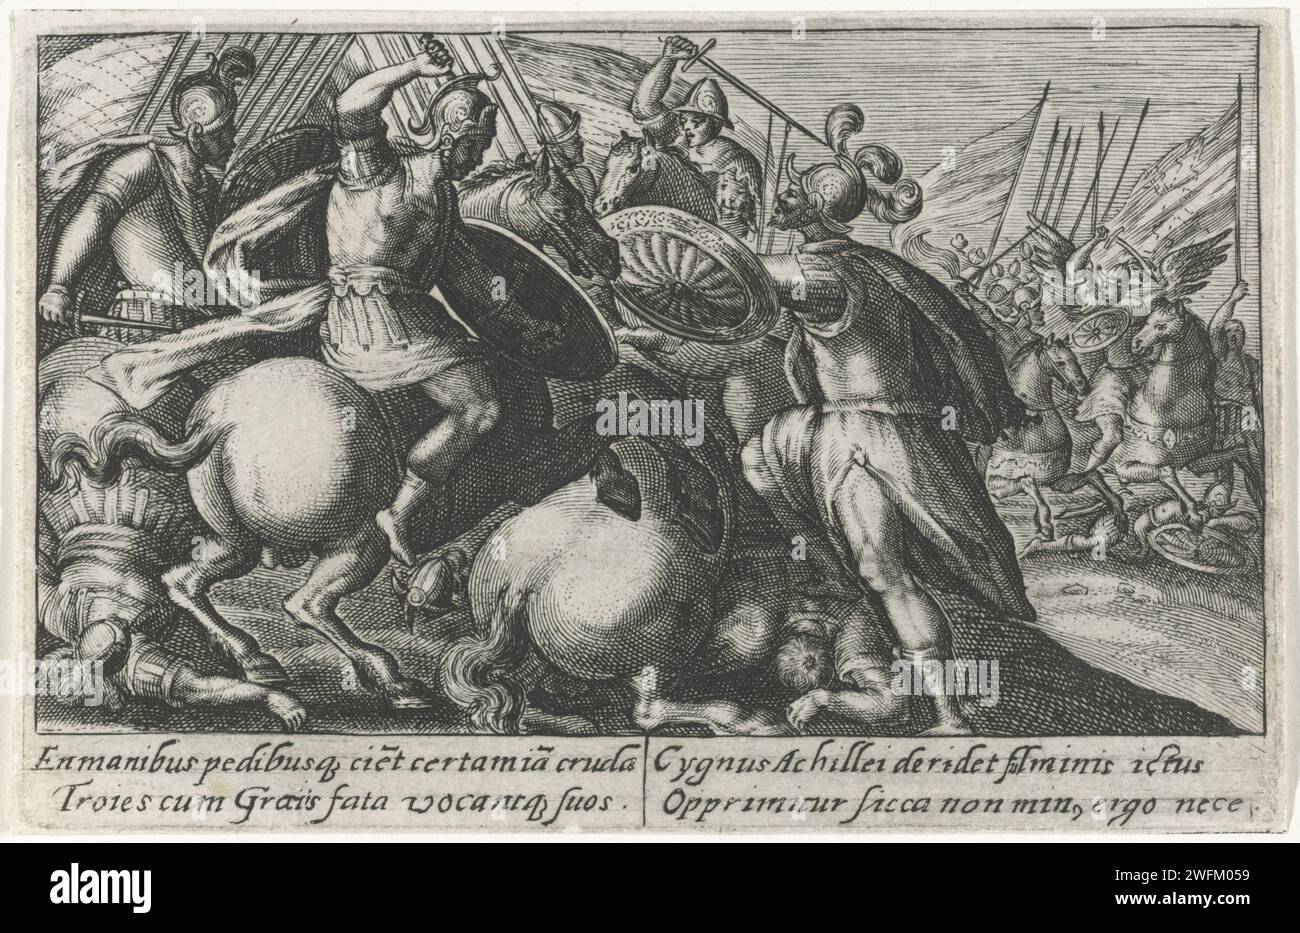 Cygnus combat avec les chevaux de Troie contre les Grecs, Crispijn van de passe (I), 1602 - 1607 imprimer Cygnus, fils de Neptunus, combat avec les chevaux de Troie contre les Grecs. Achille a conquis Cygnus après un long combat. Dans la marge, une légende de quatre lignes, en deux colonnes, en latin. Gravure sur papier de Cologne Cygnus, fils de Neptune, transformé en cygne : quand Achille arrive au pays de Troie il étrangle Cycnus, fils de Neptune ; Cycnus est transformé en cygne par son père (Ovide, Métamorphoses XII 144) (+ variante) Banque D'Images